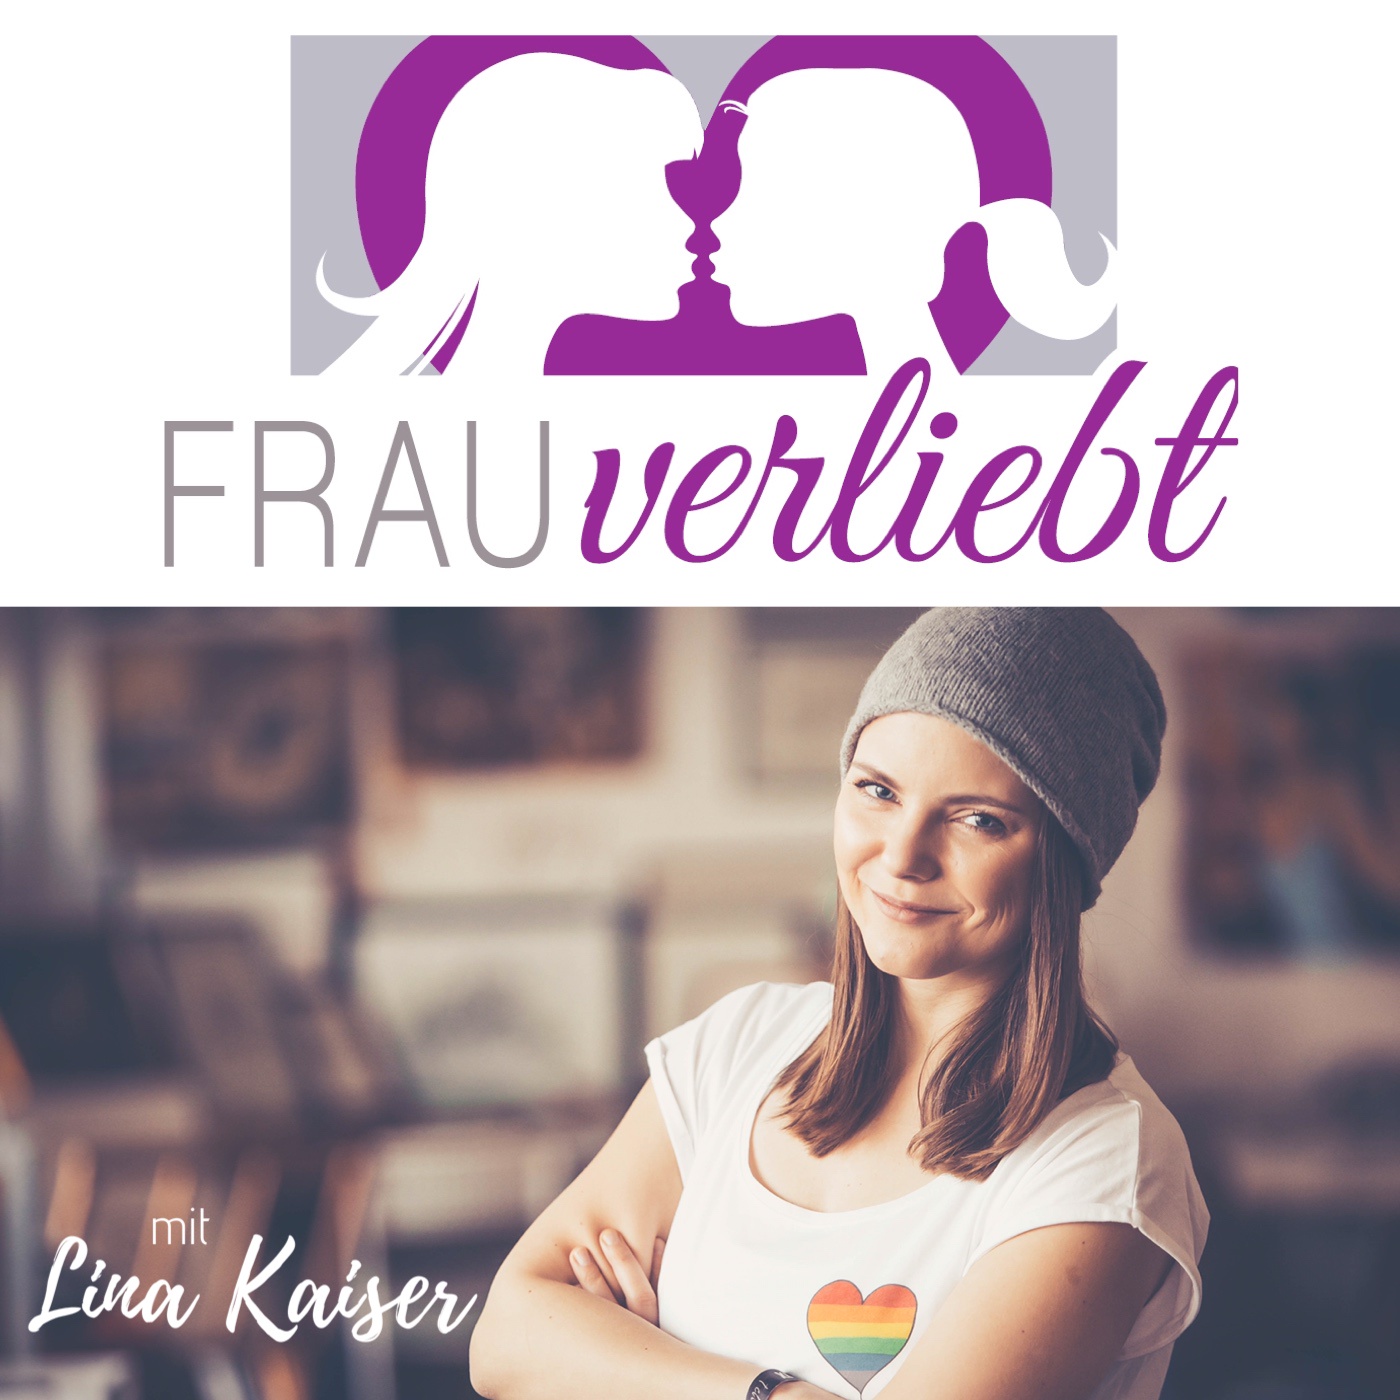 frauverliebt - der lesbische Podcast mit Lina Kaiser